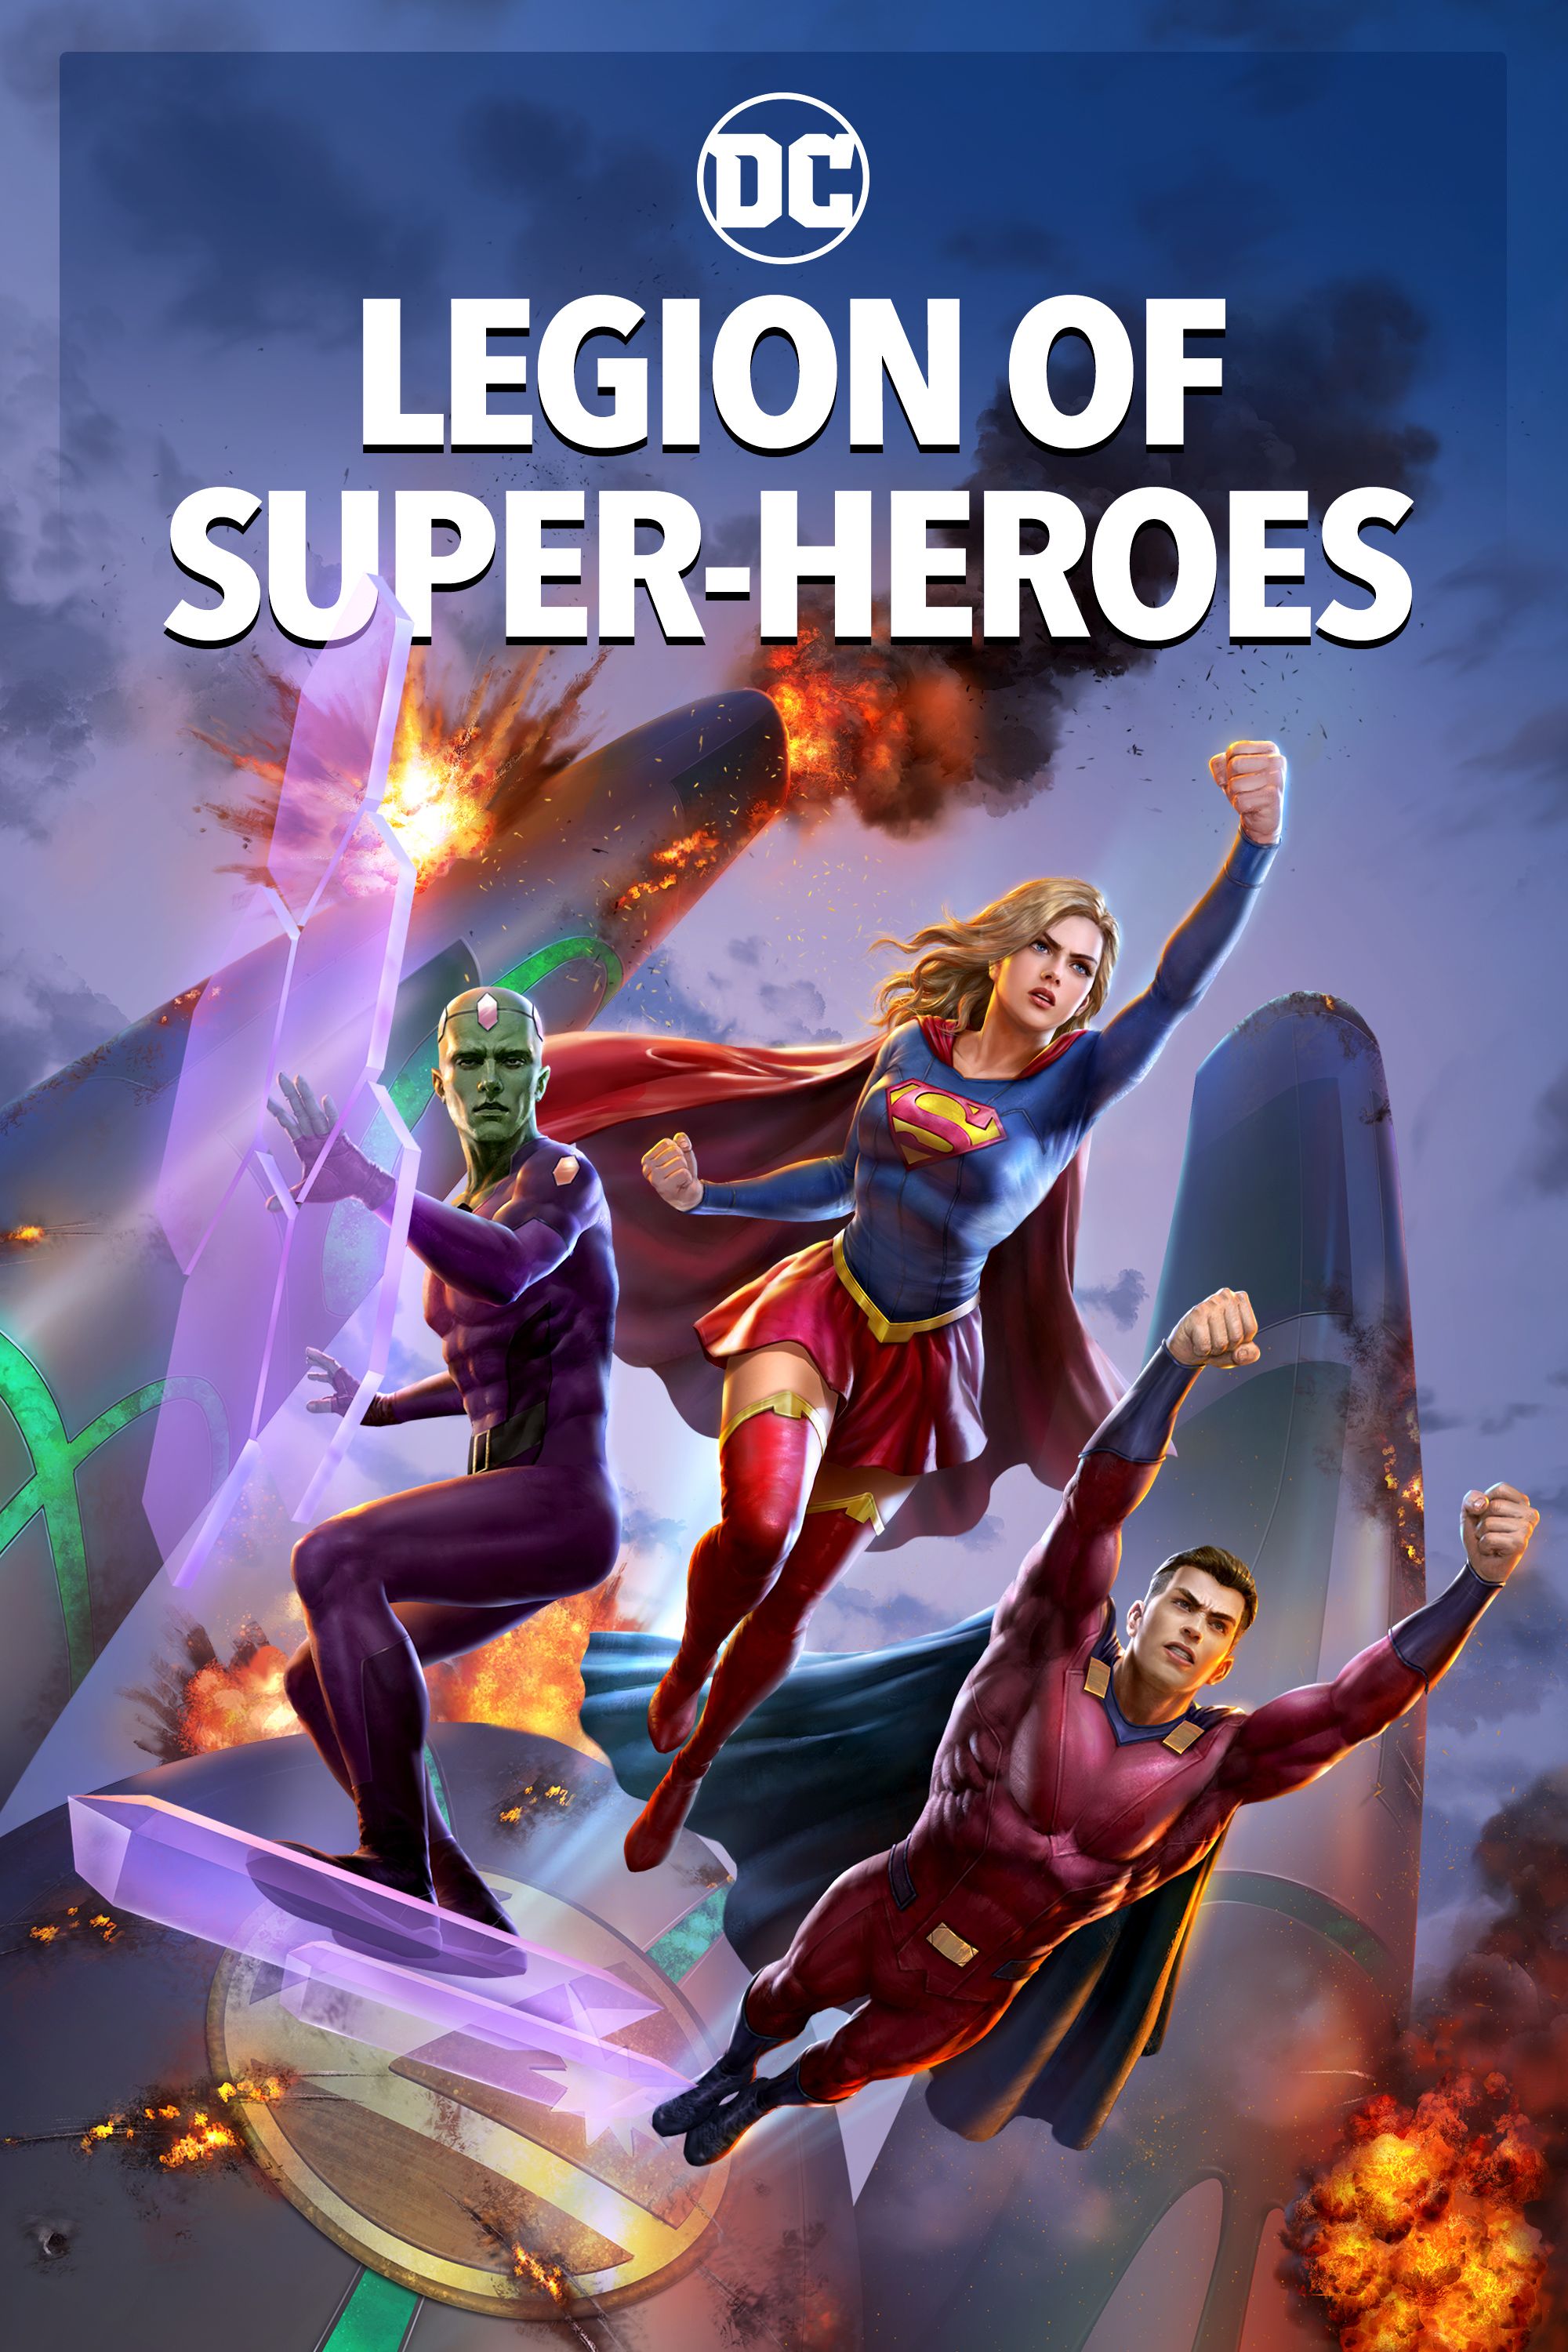 Legion of superheroes watch online free